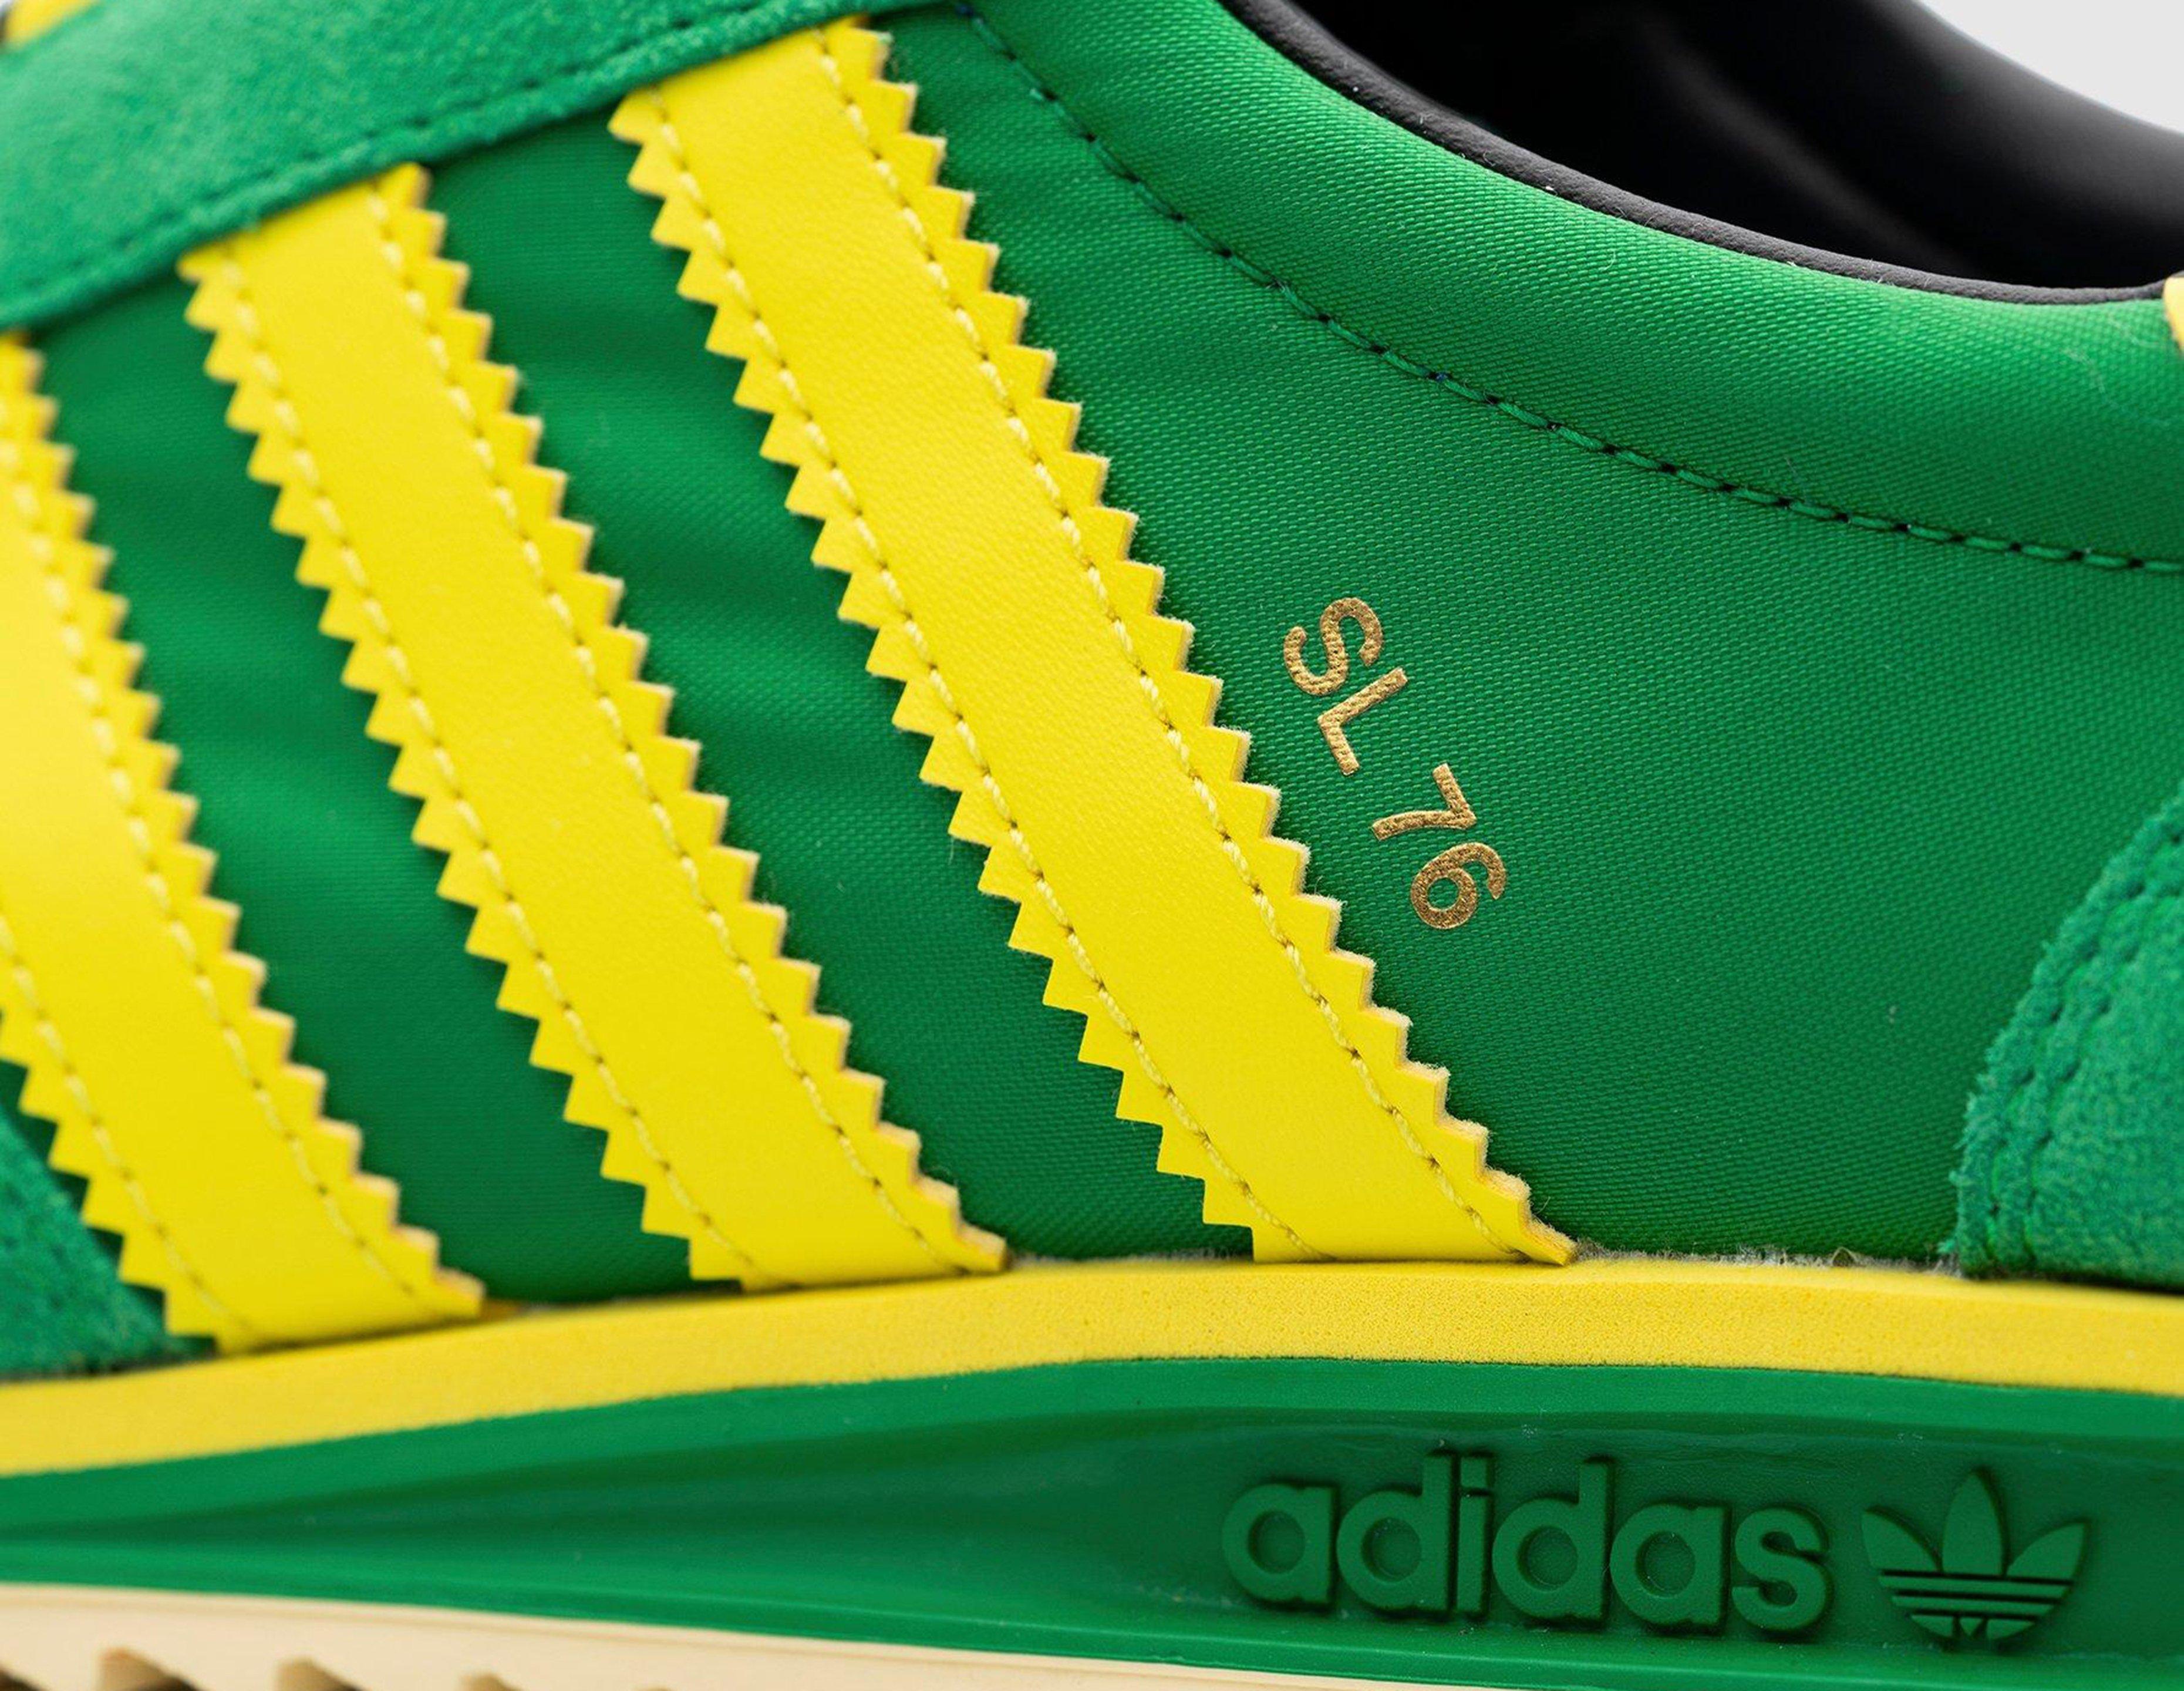 adidas sl76 green size